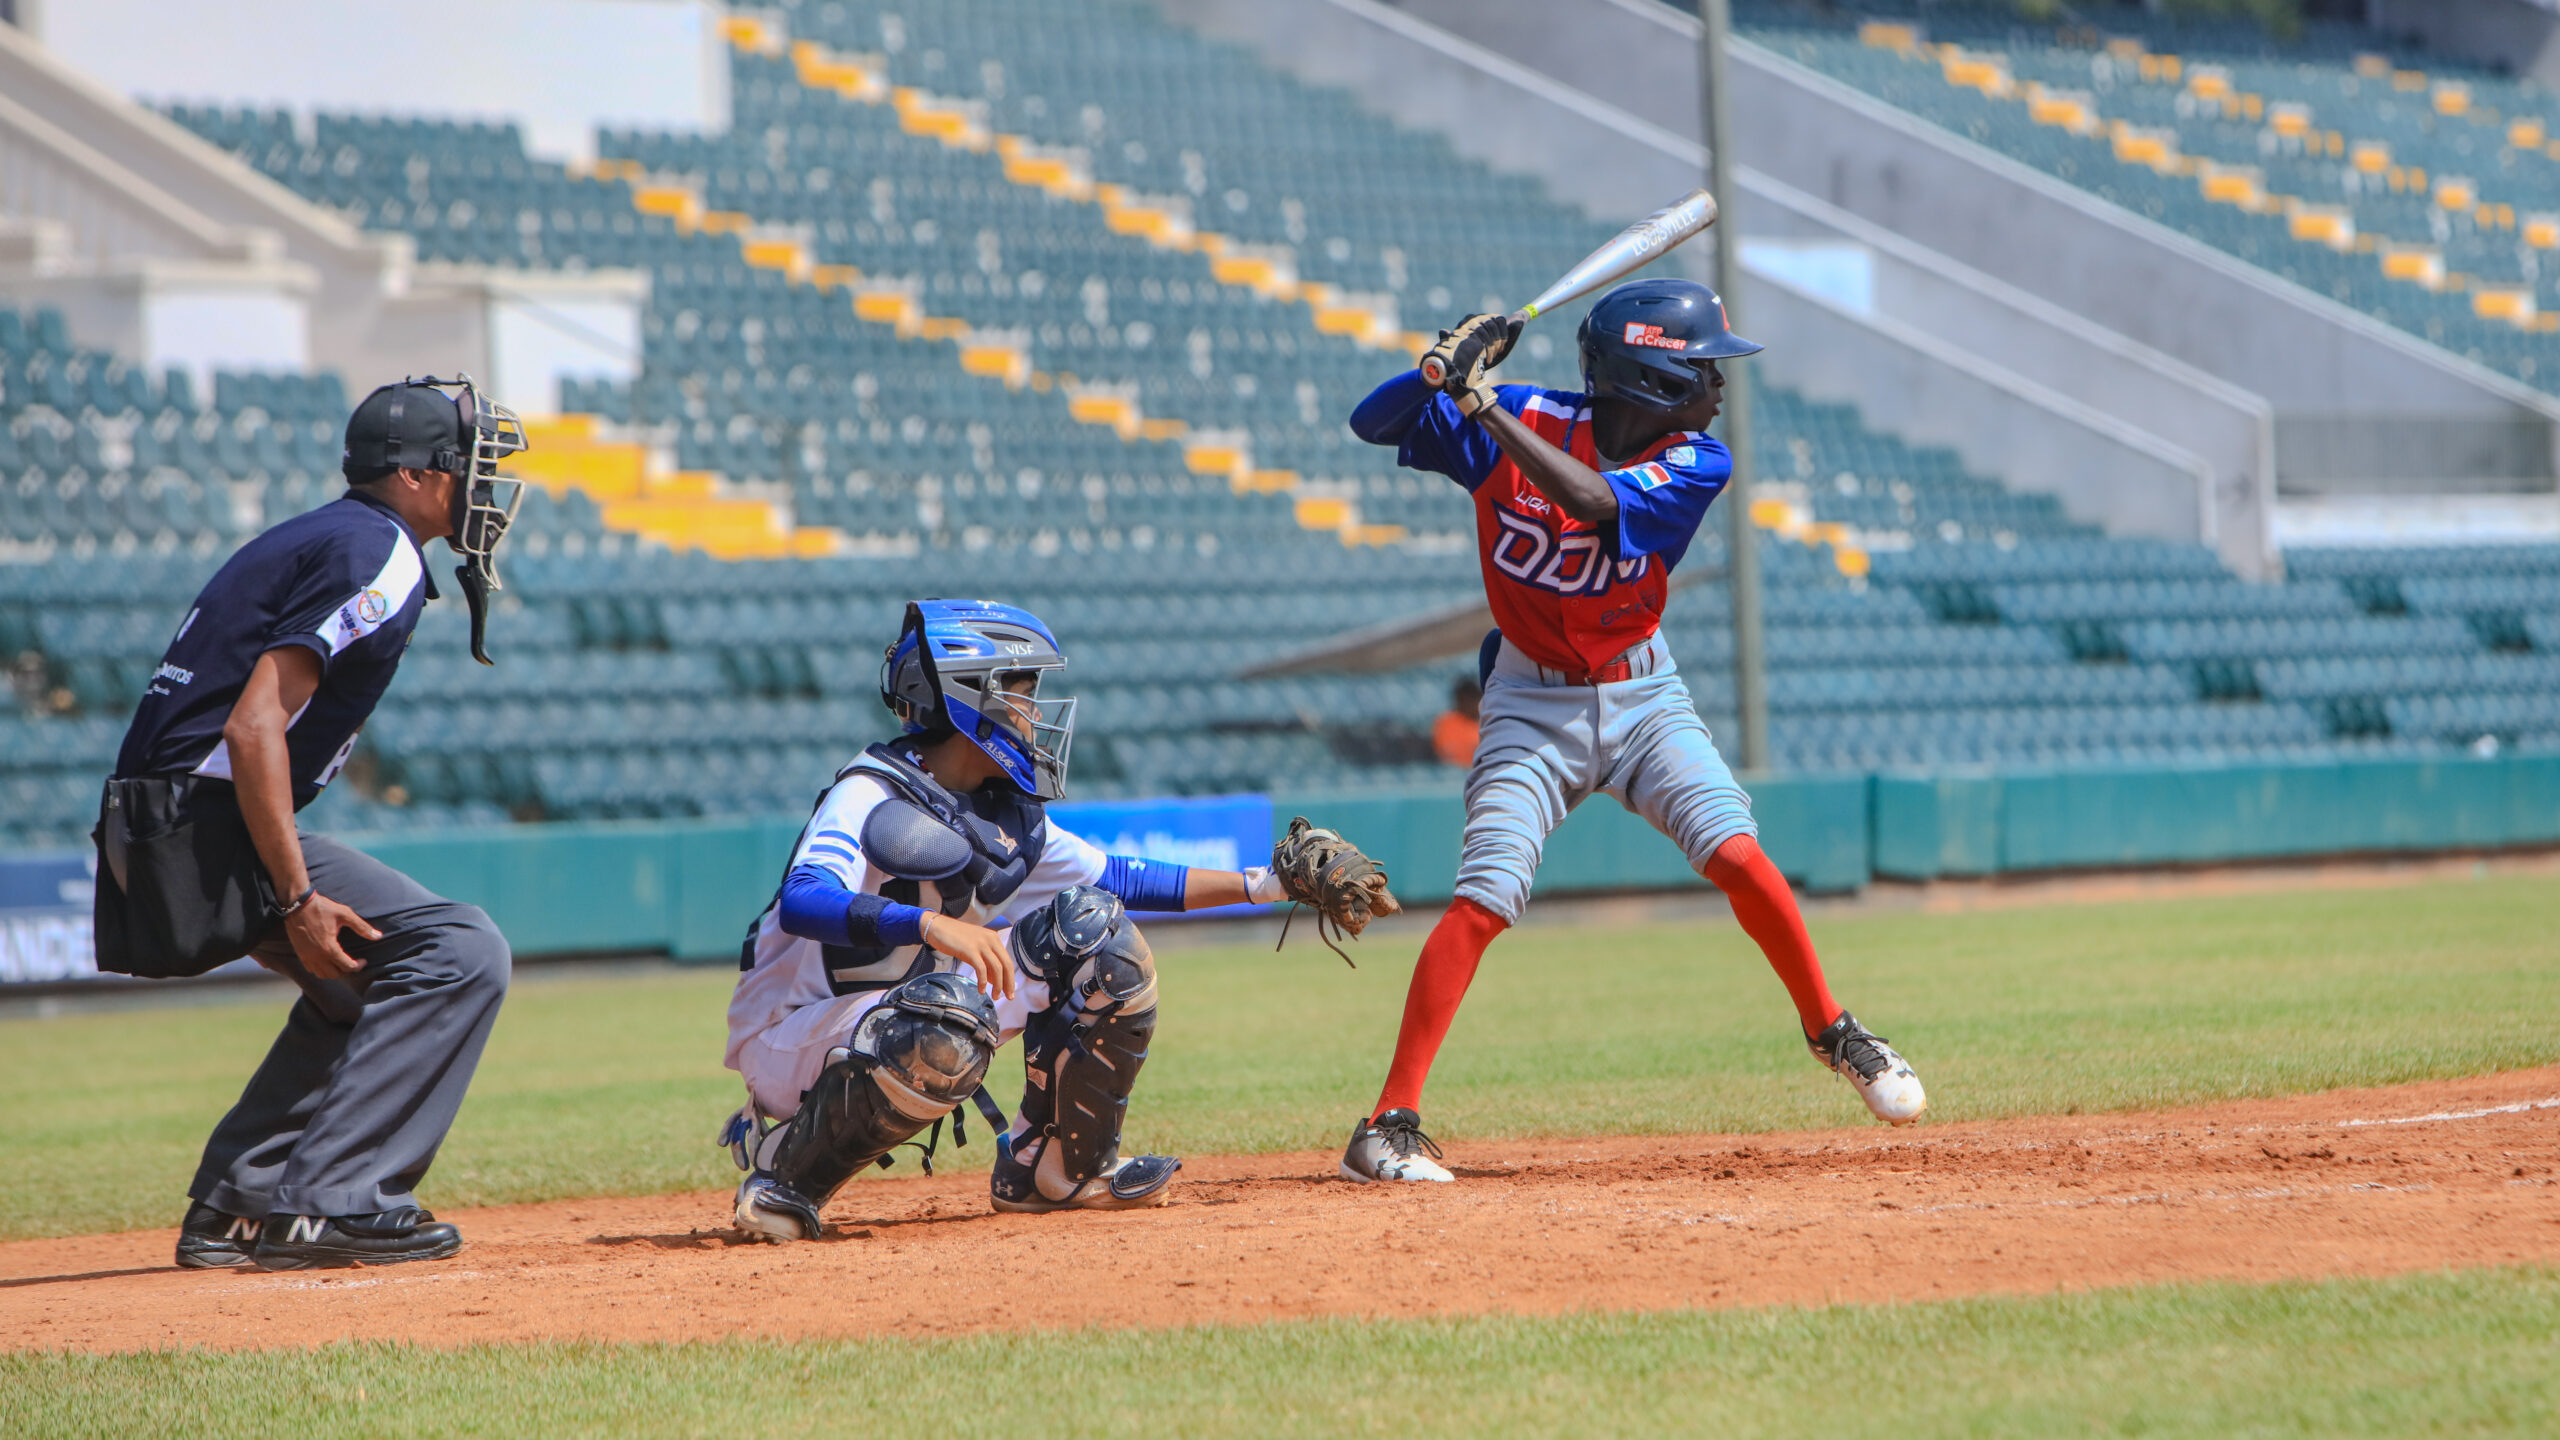 República Dominicana pasa a la semifinal de la Serie del Caribe Kids